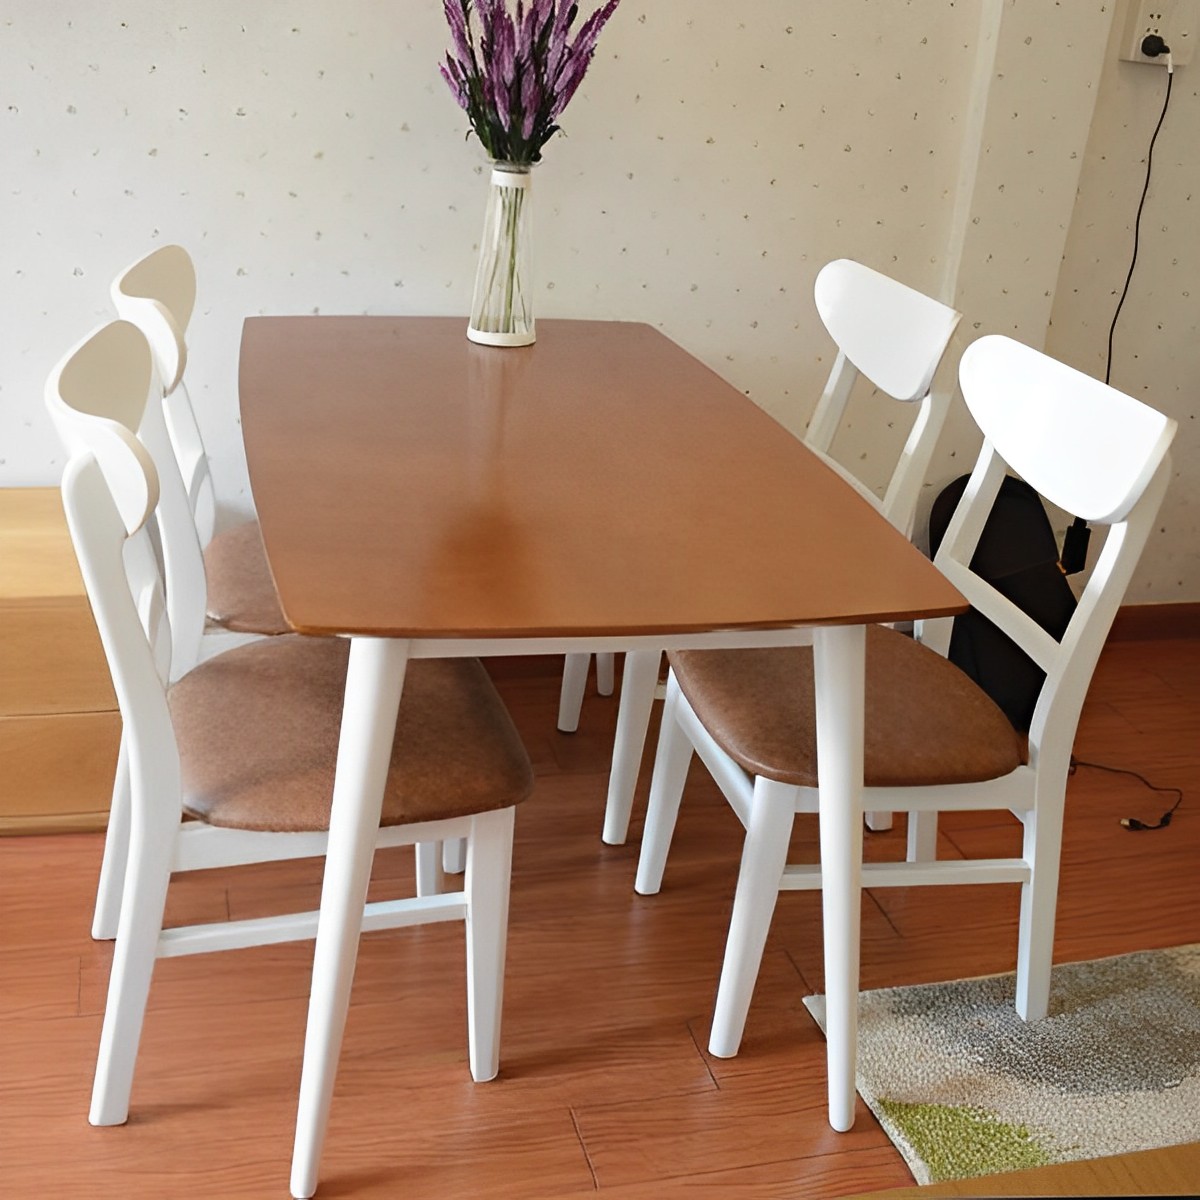 Kelebihan set meja makan modern warna kombinasi duco putih aesthetic